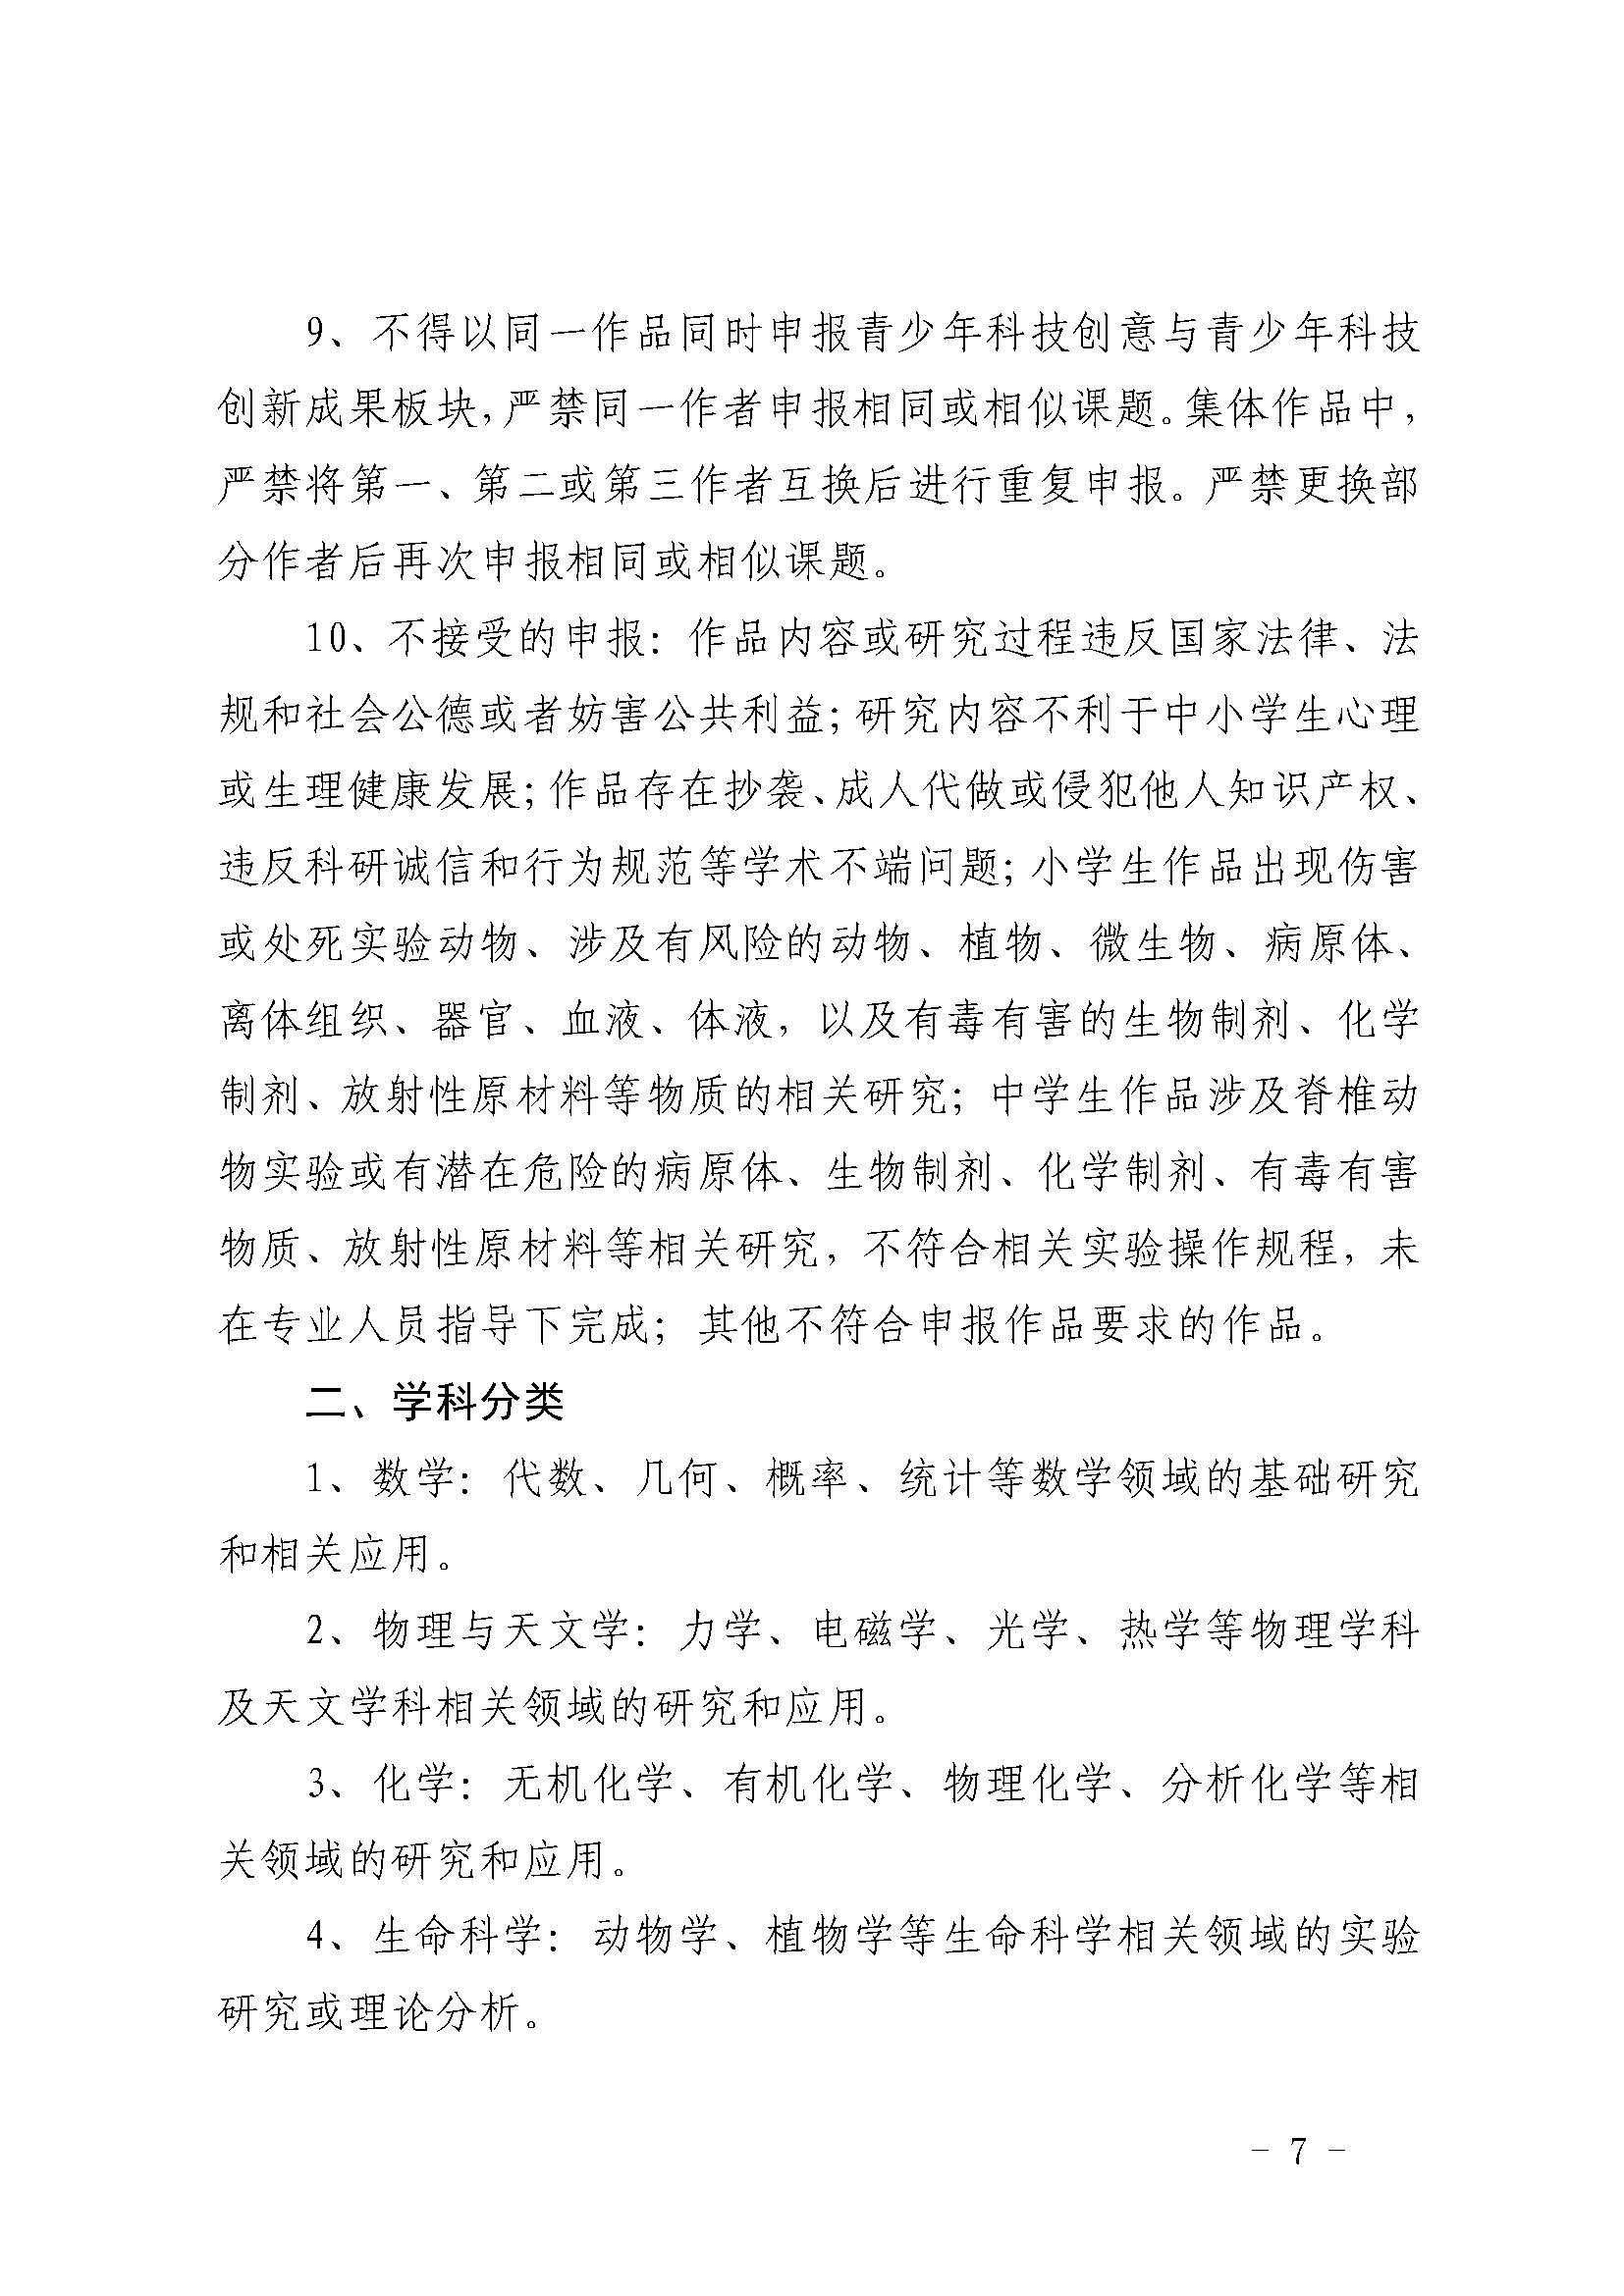 第39届上海市青少年科技创新大赛举办通知V4.3_页面_07.jpg